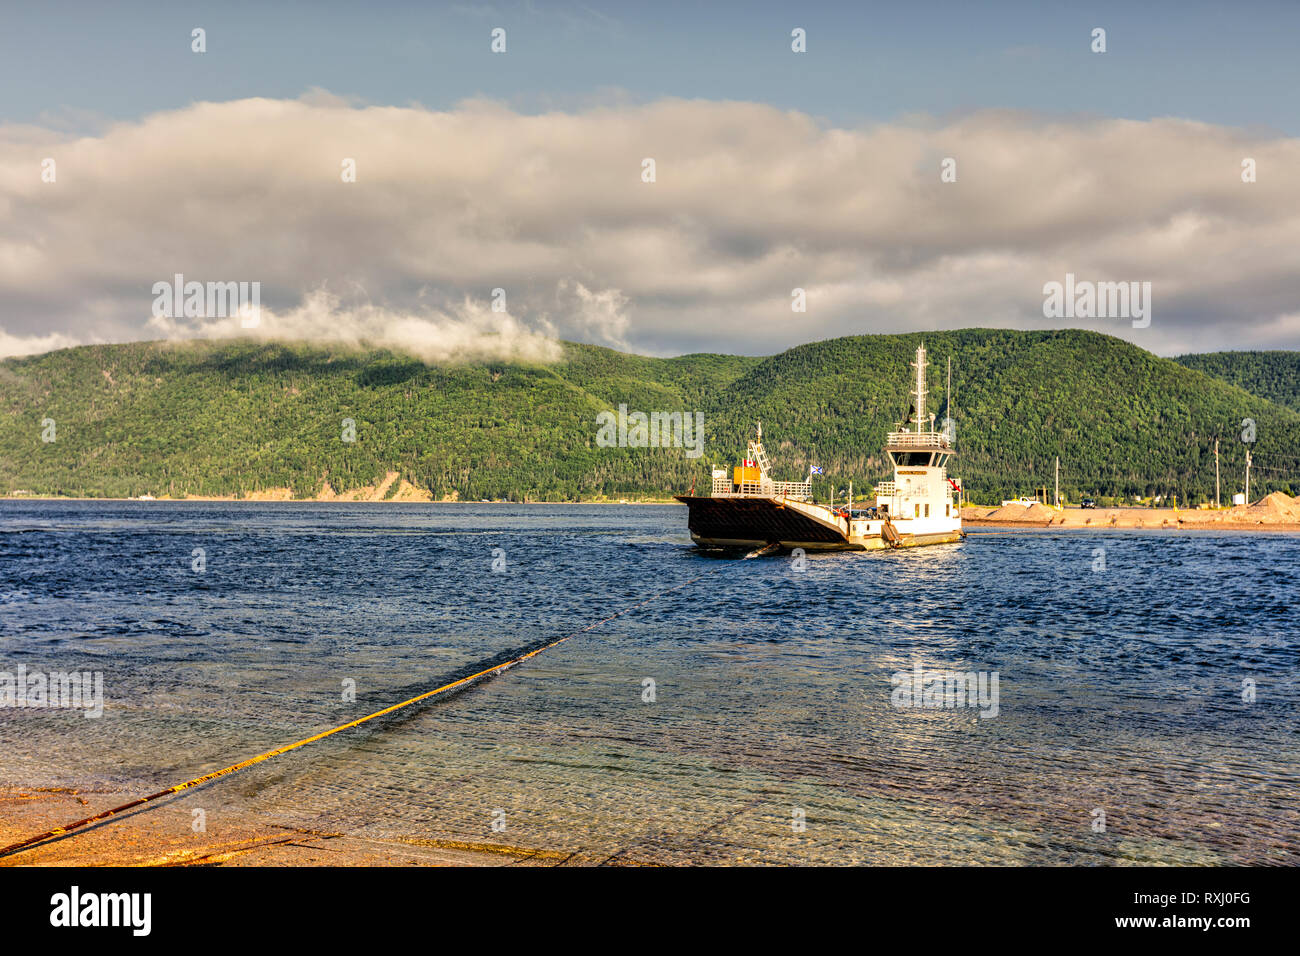 Englishtown Ferry, lac Bras d'Or, l'île du Cap-Breton, Nouvelle-Écosse, Canada Banque D'Images